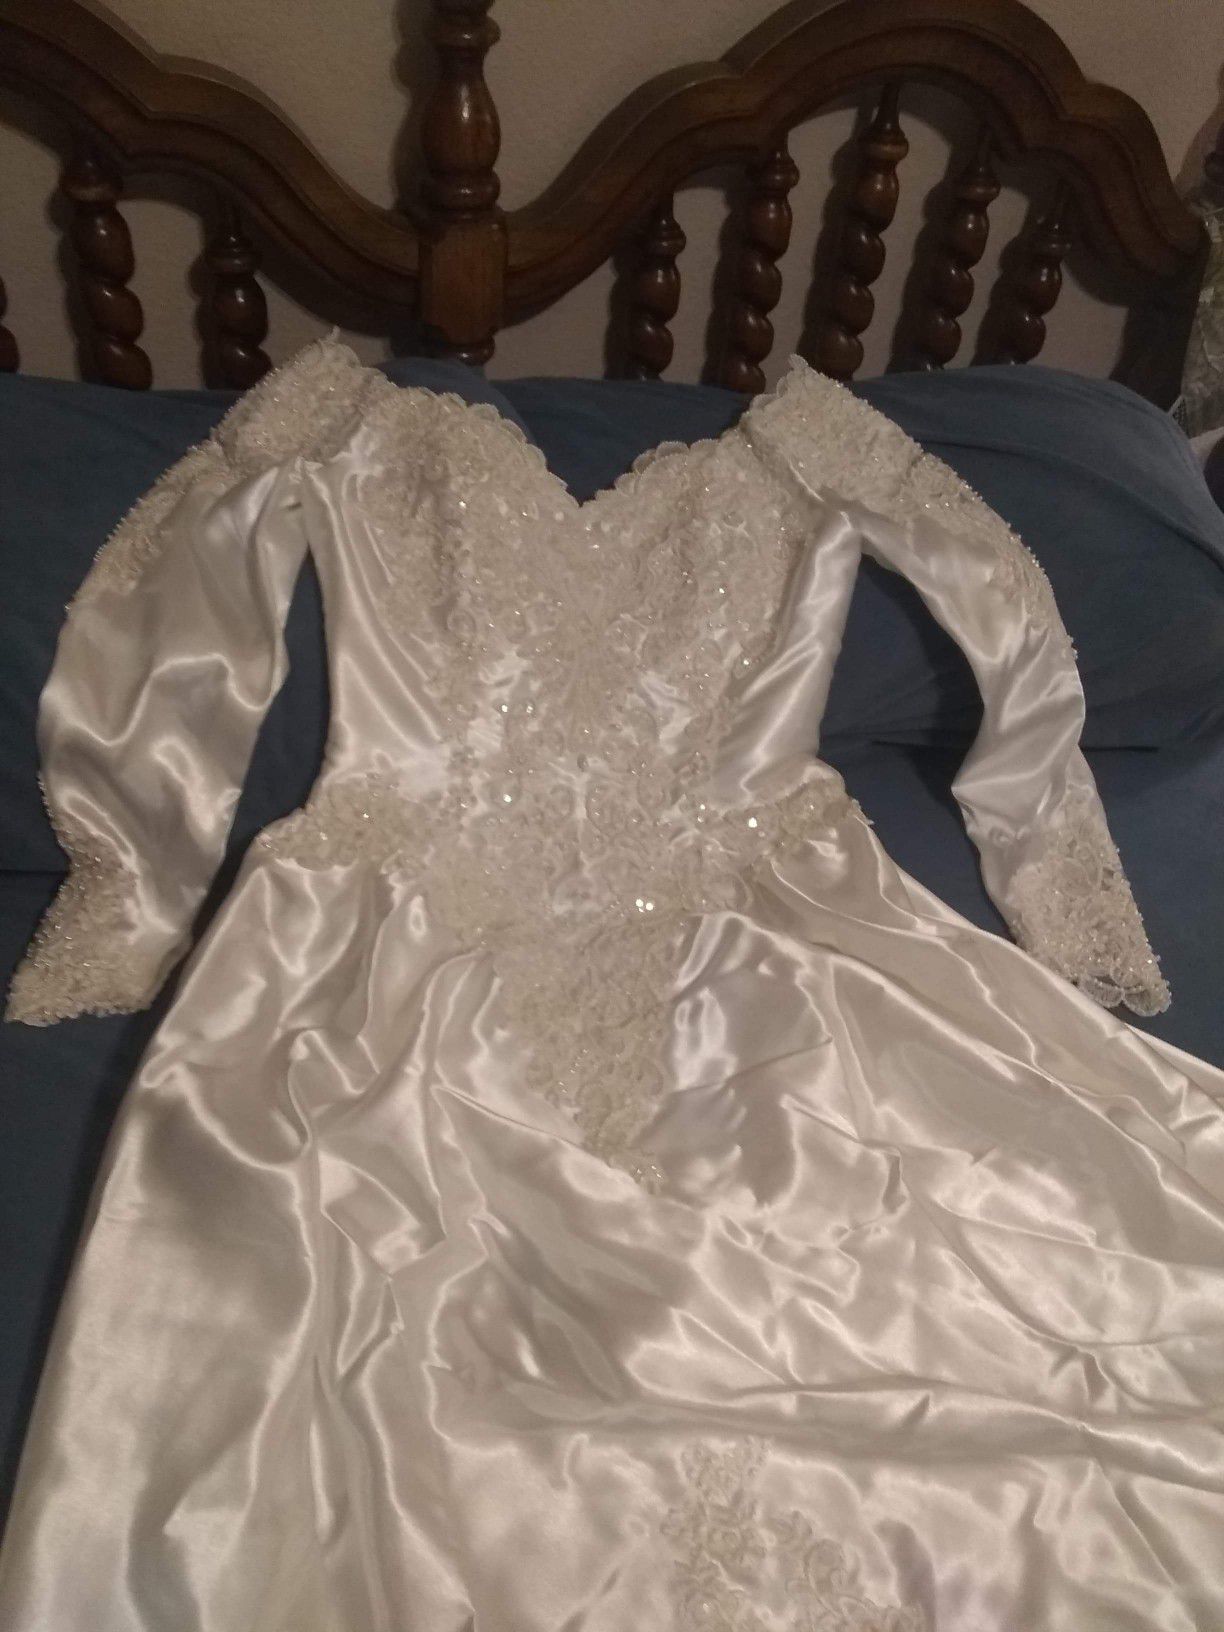 Size 12 Sweetheart wedding dress